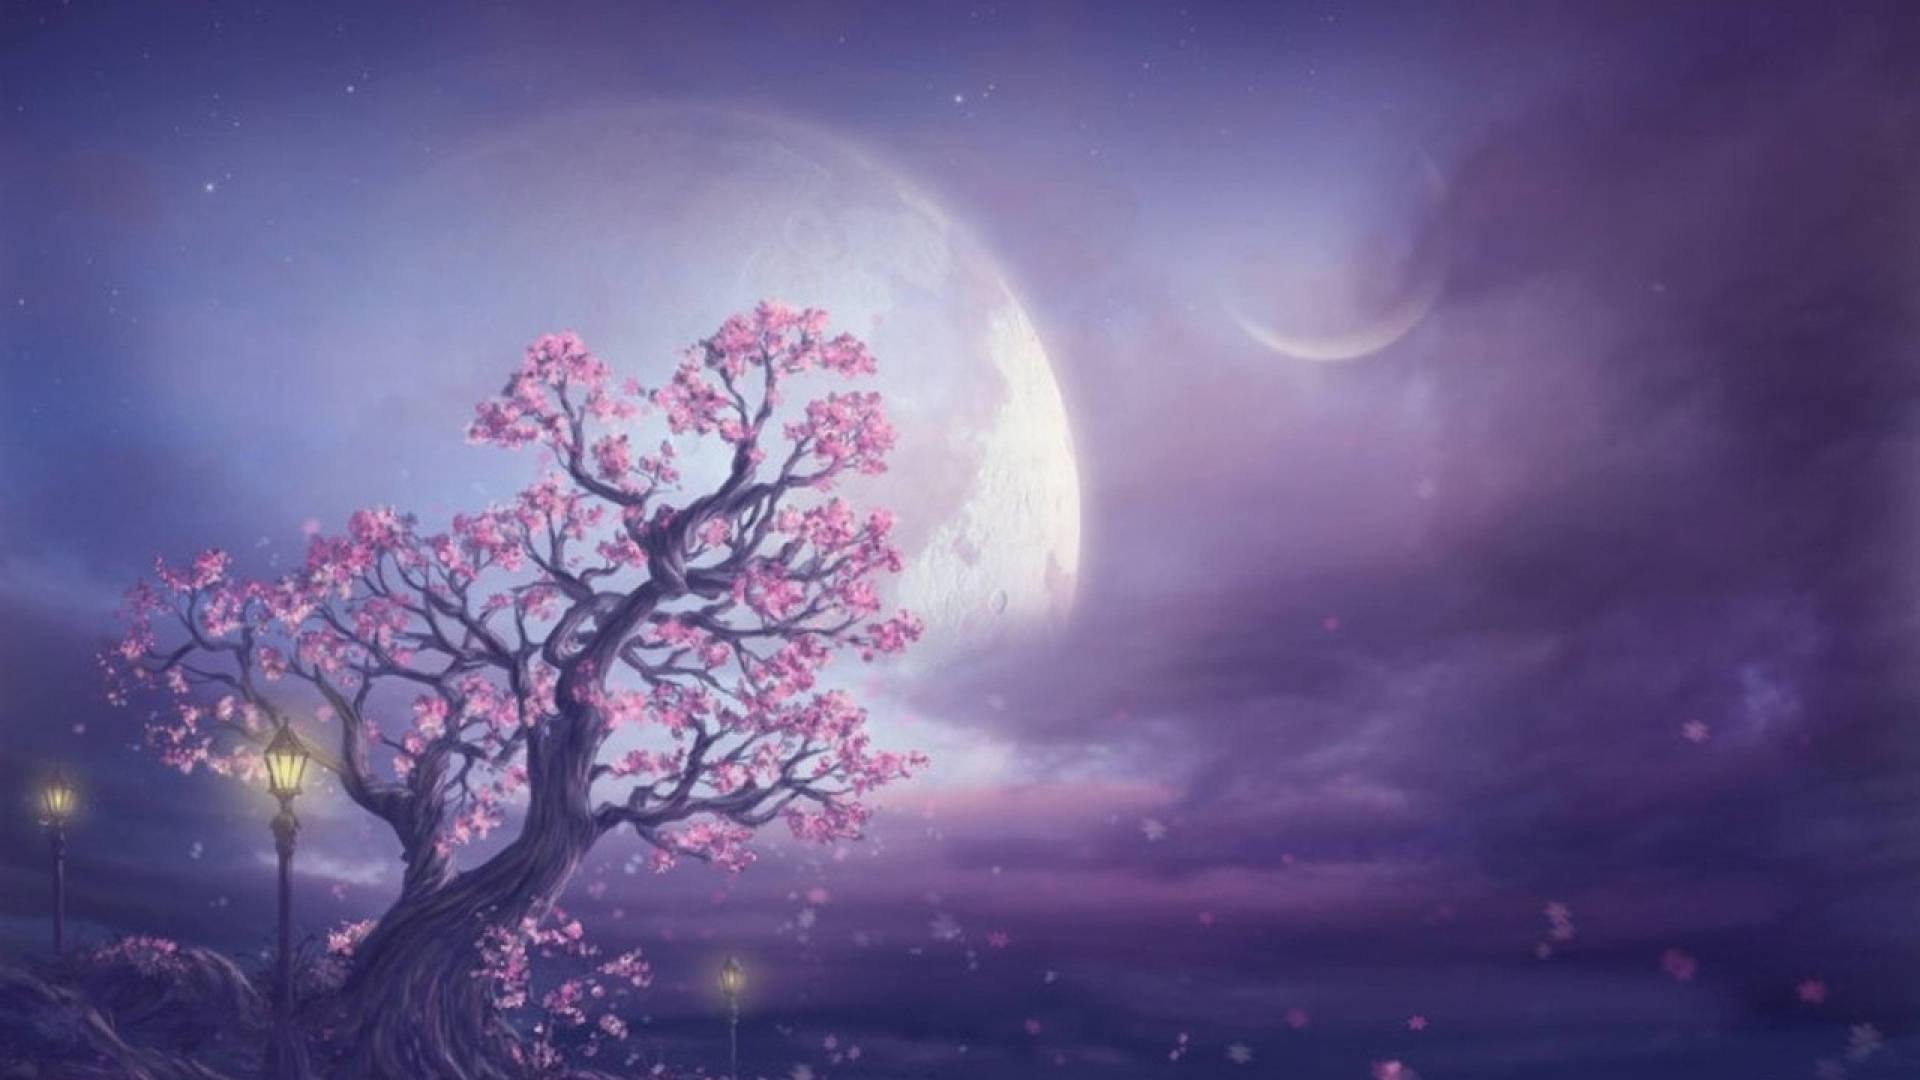 Galaxy Moon And Cherry Blossom Tree